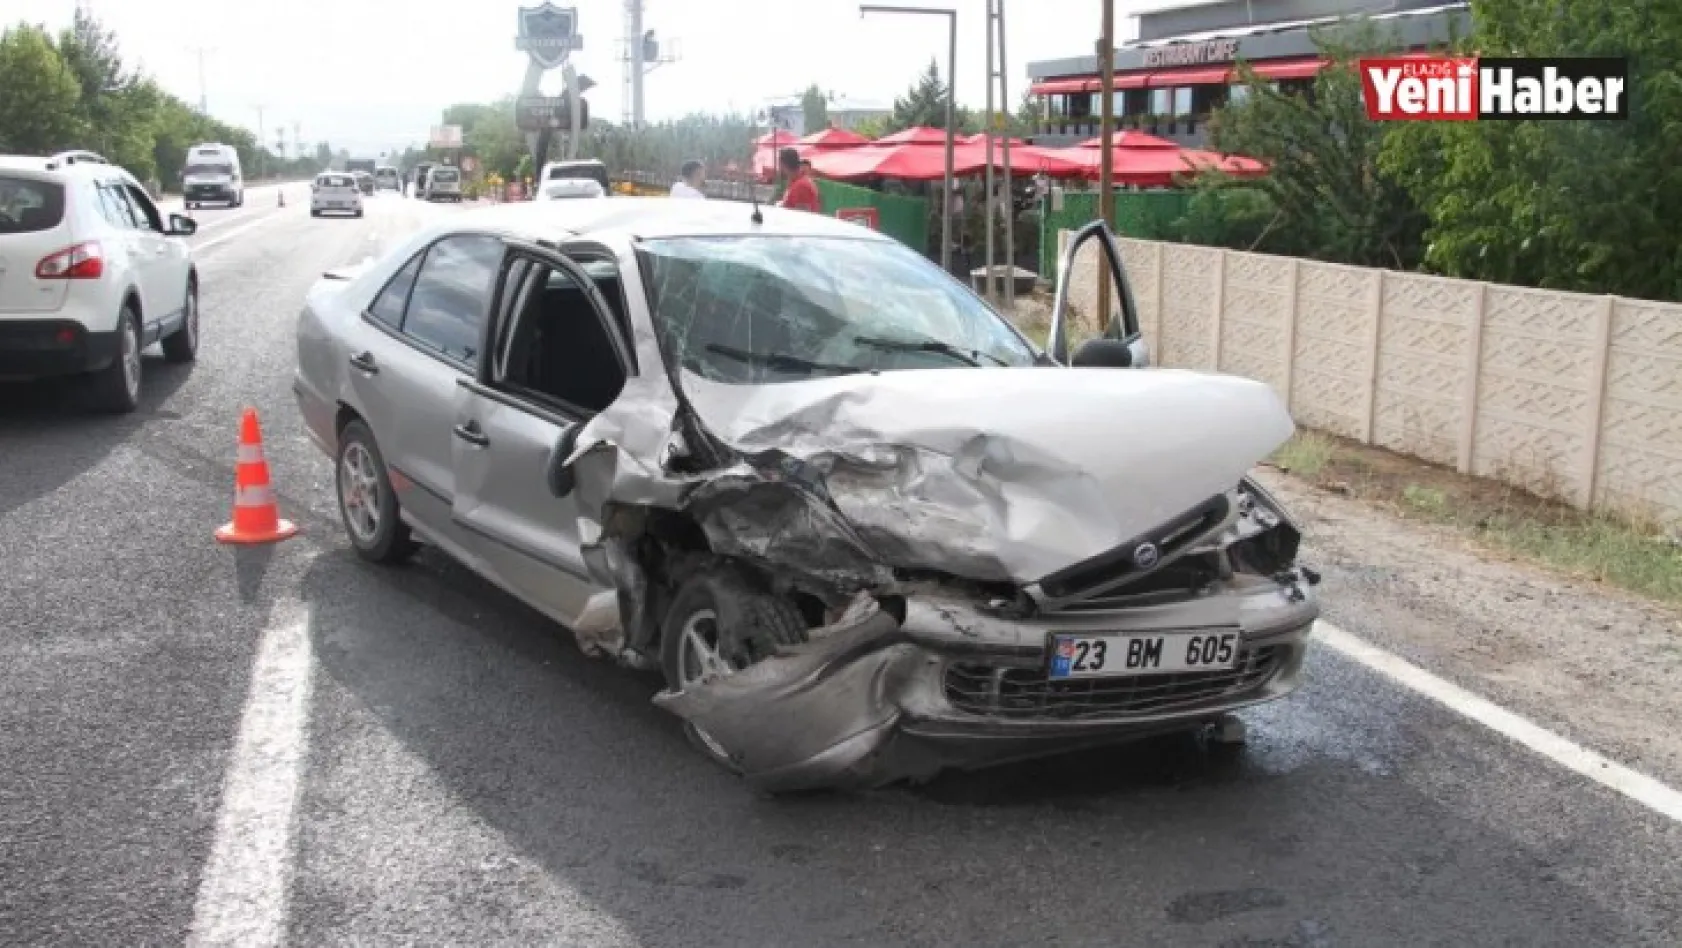 Elazığ'da Zincirleme Trafik Kazası!